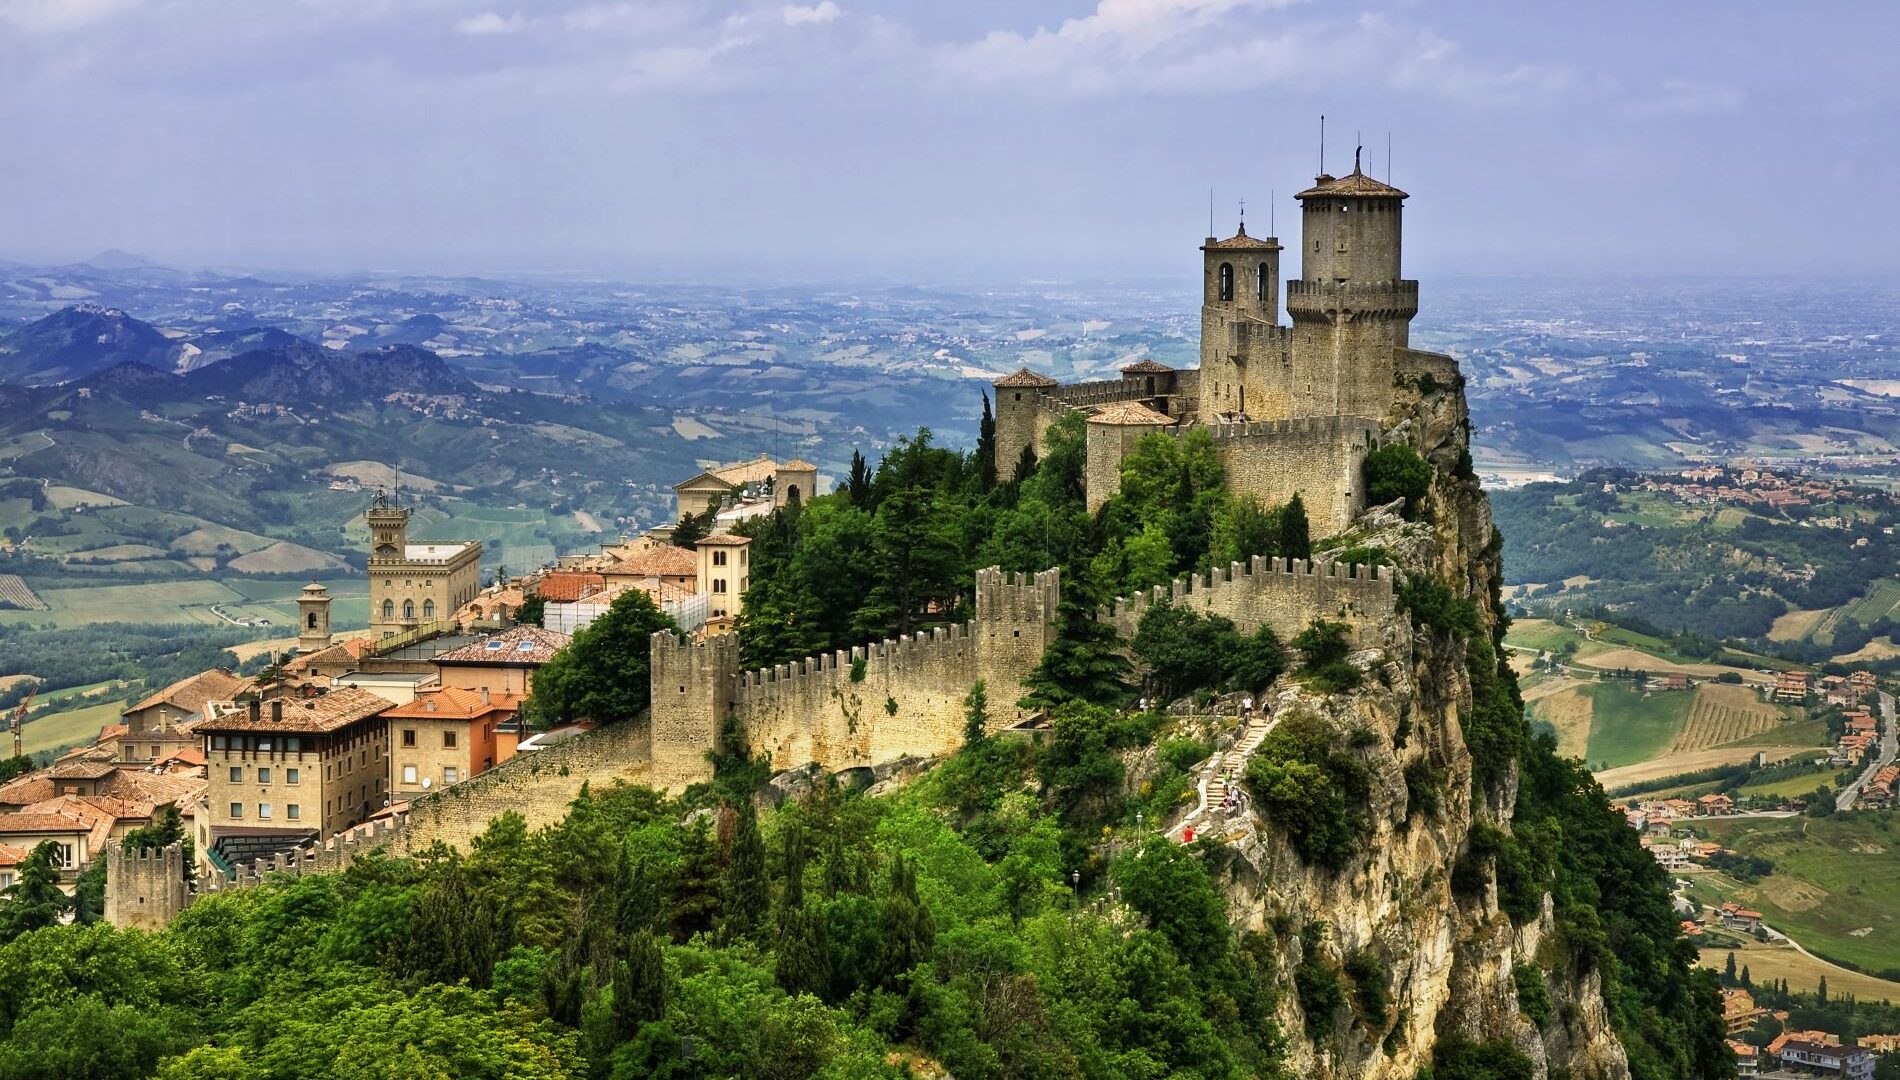 Investire, comprare casa o aprire un’attività a San Marino